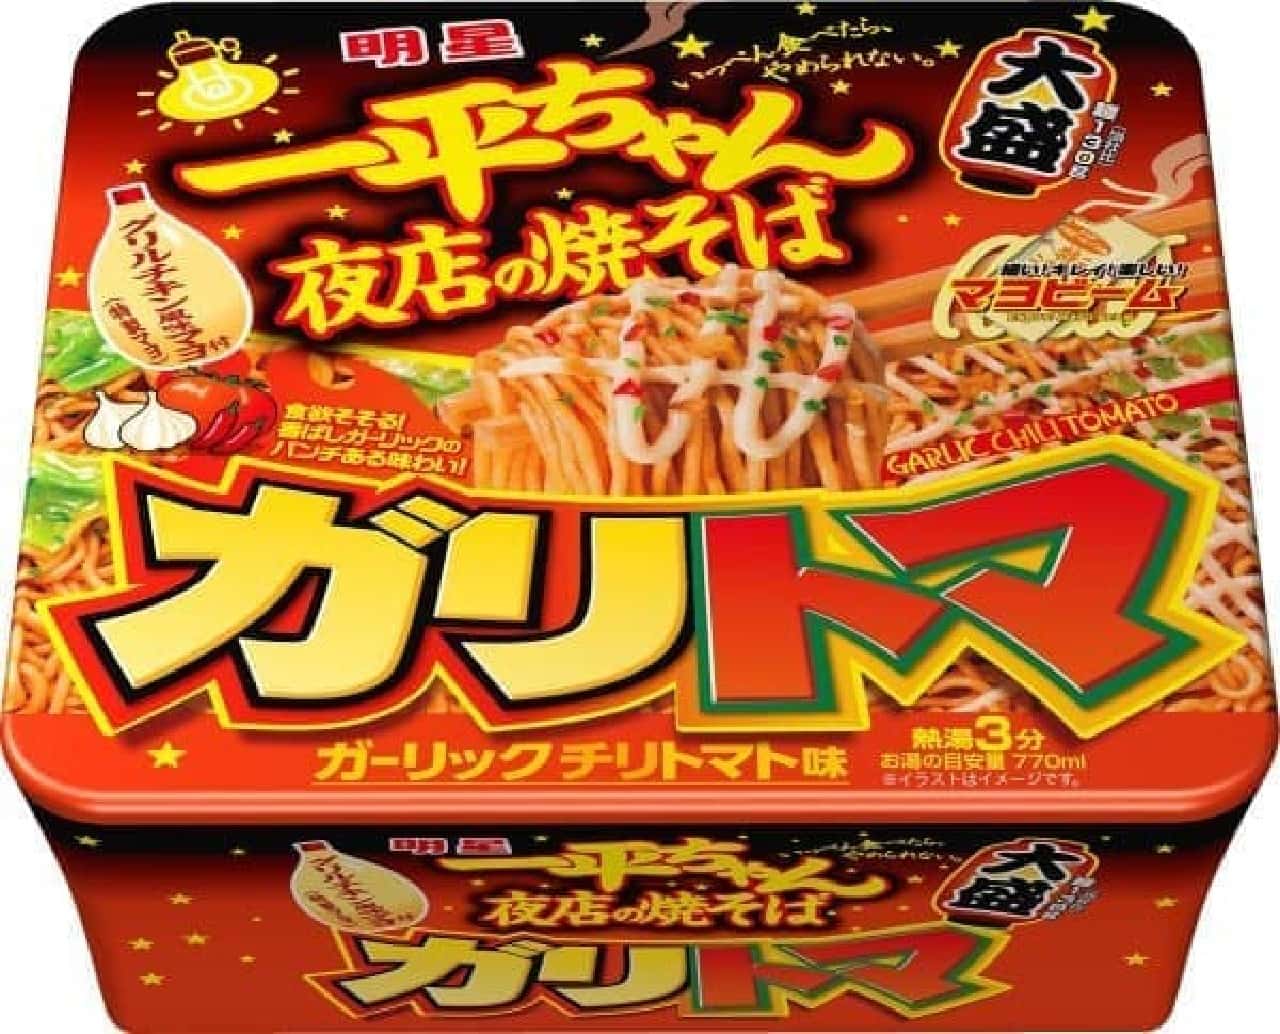 From Myojo Foods "Myojo Ippei-chan Yoten no Yakisoba", "Omori Garlic Chili Tomato Flavor"